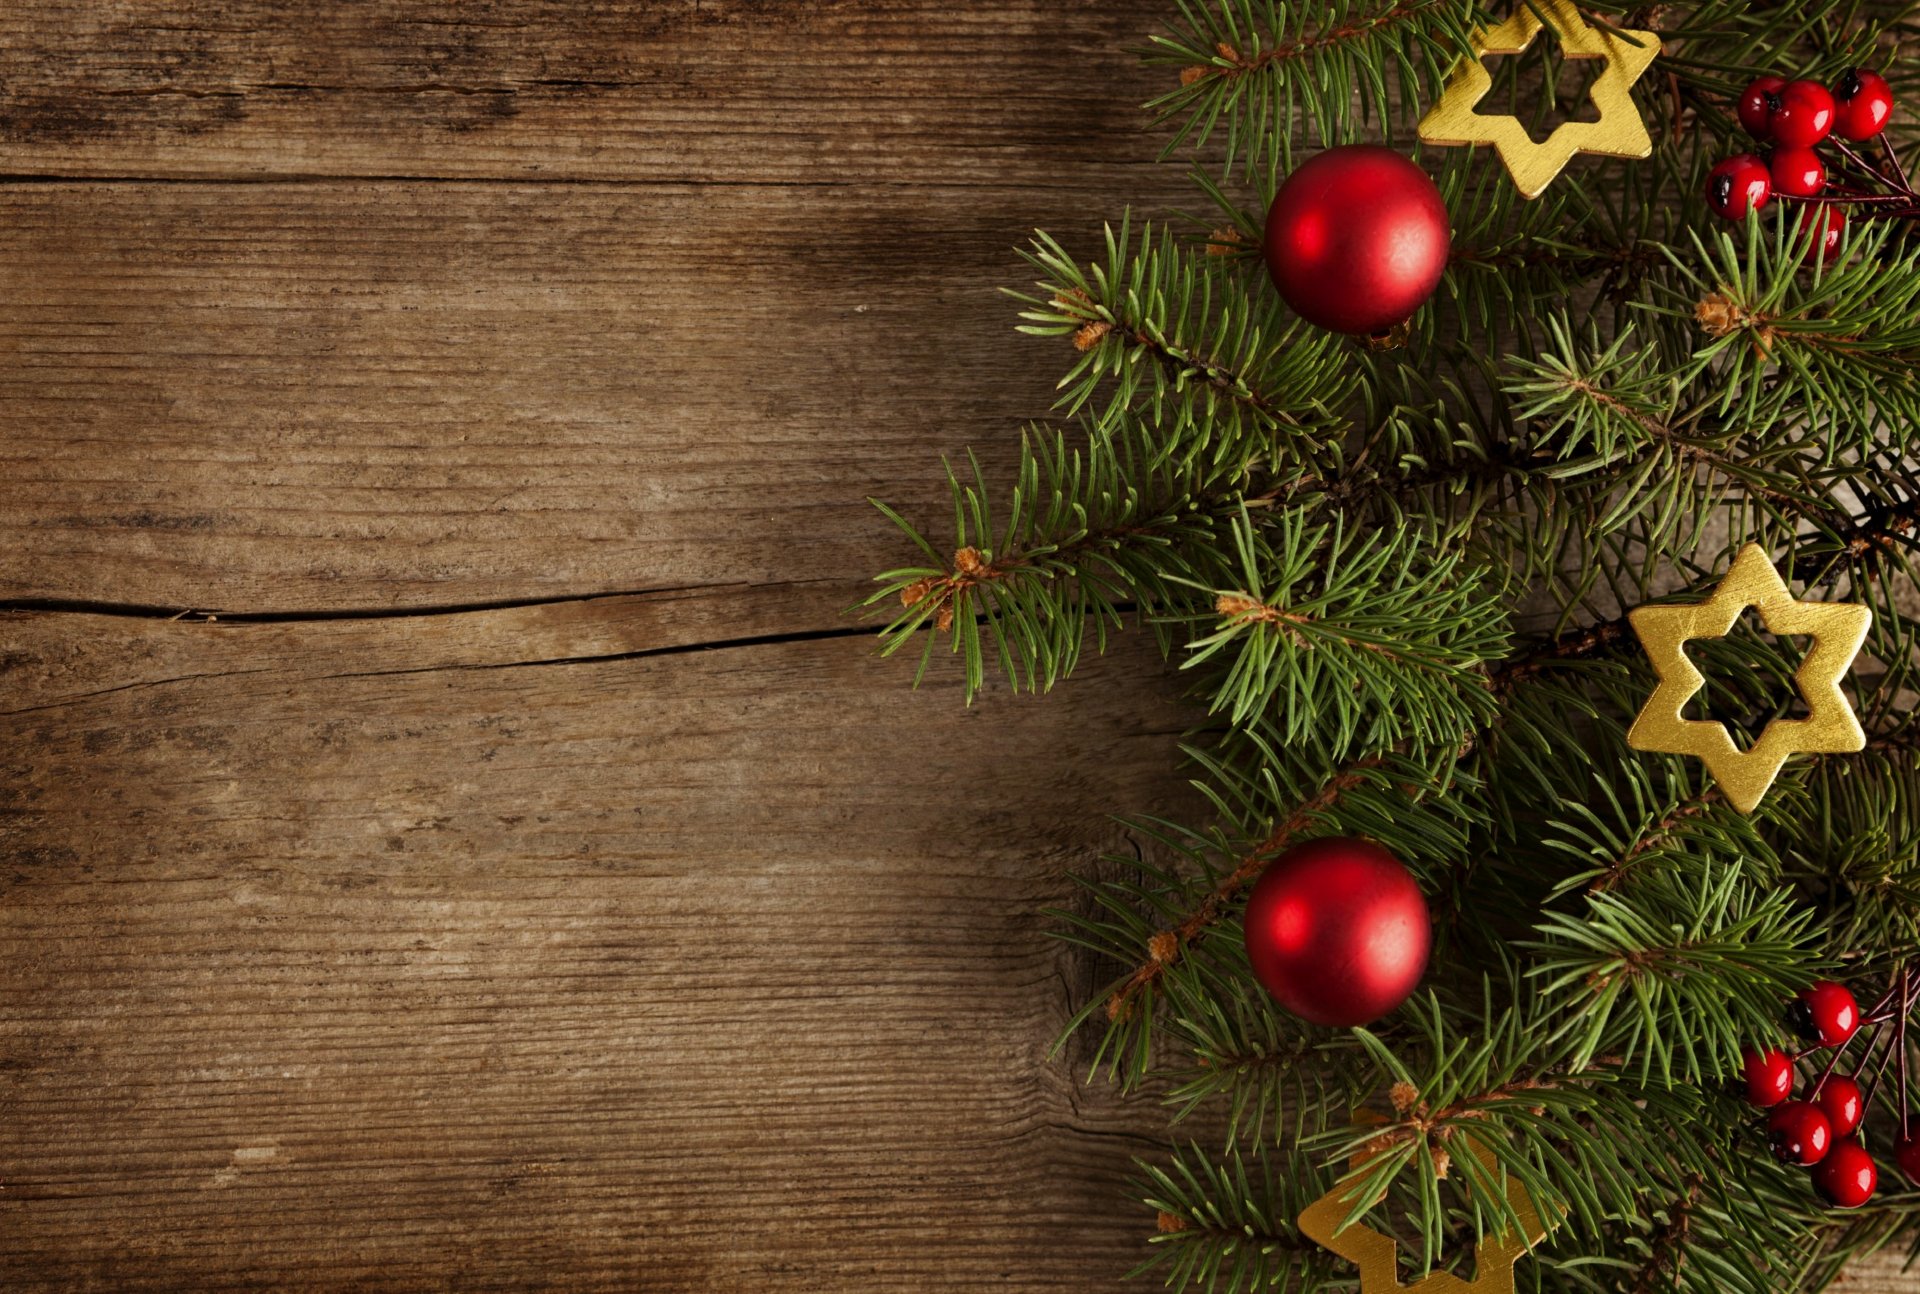 зимние отдых звезда счастливого рождества шарики новогоднее украшение праздник зима с рождеством христовым шары рождественские украшения